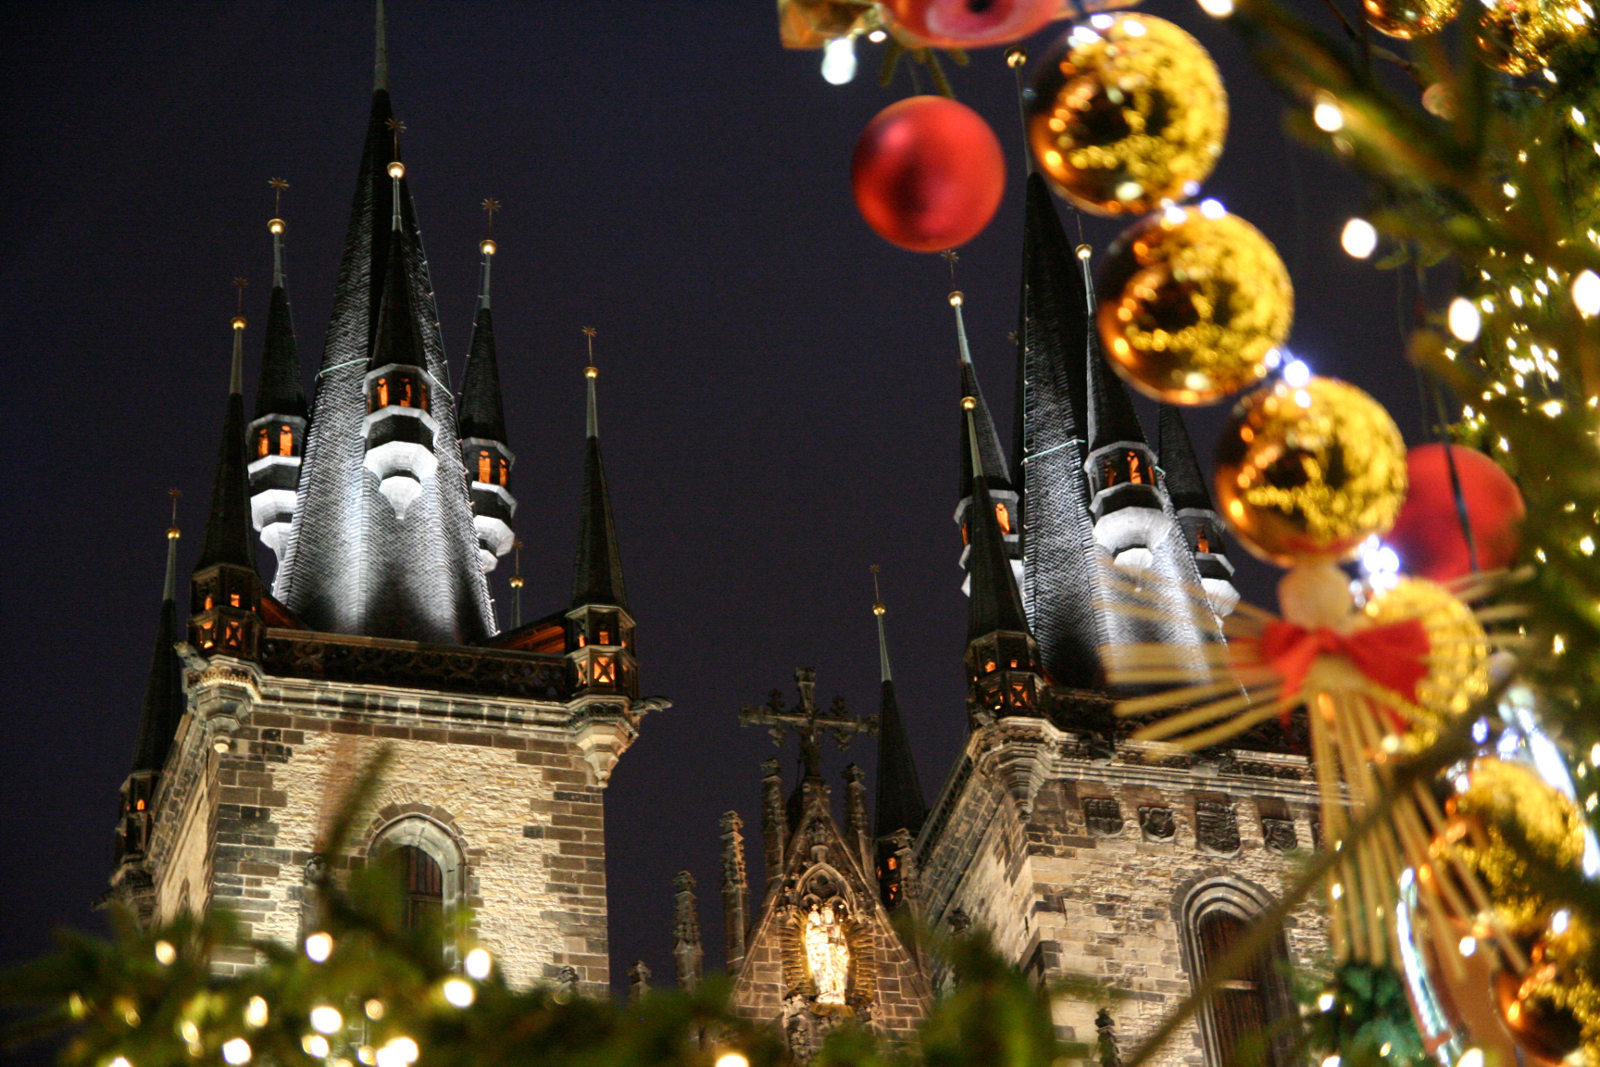 Vánoce v Praze